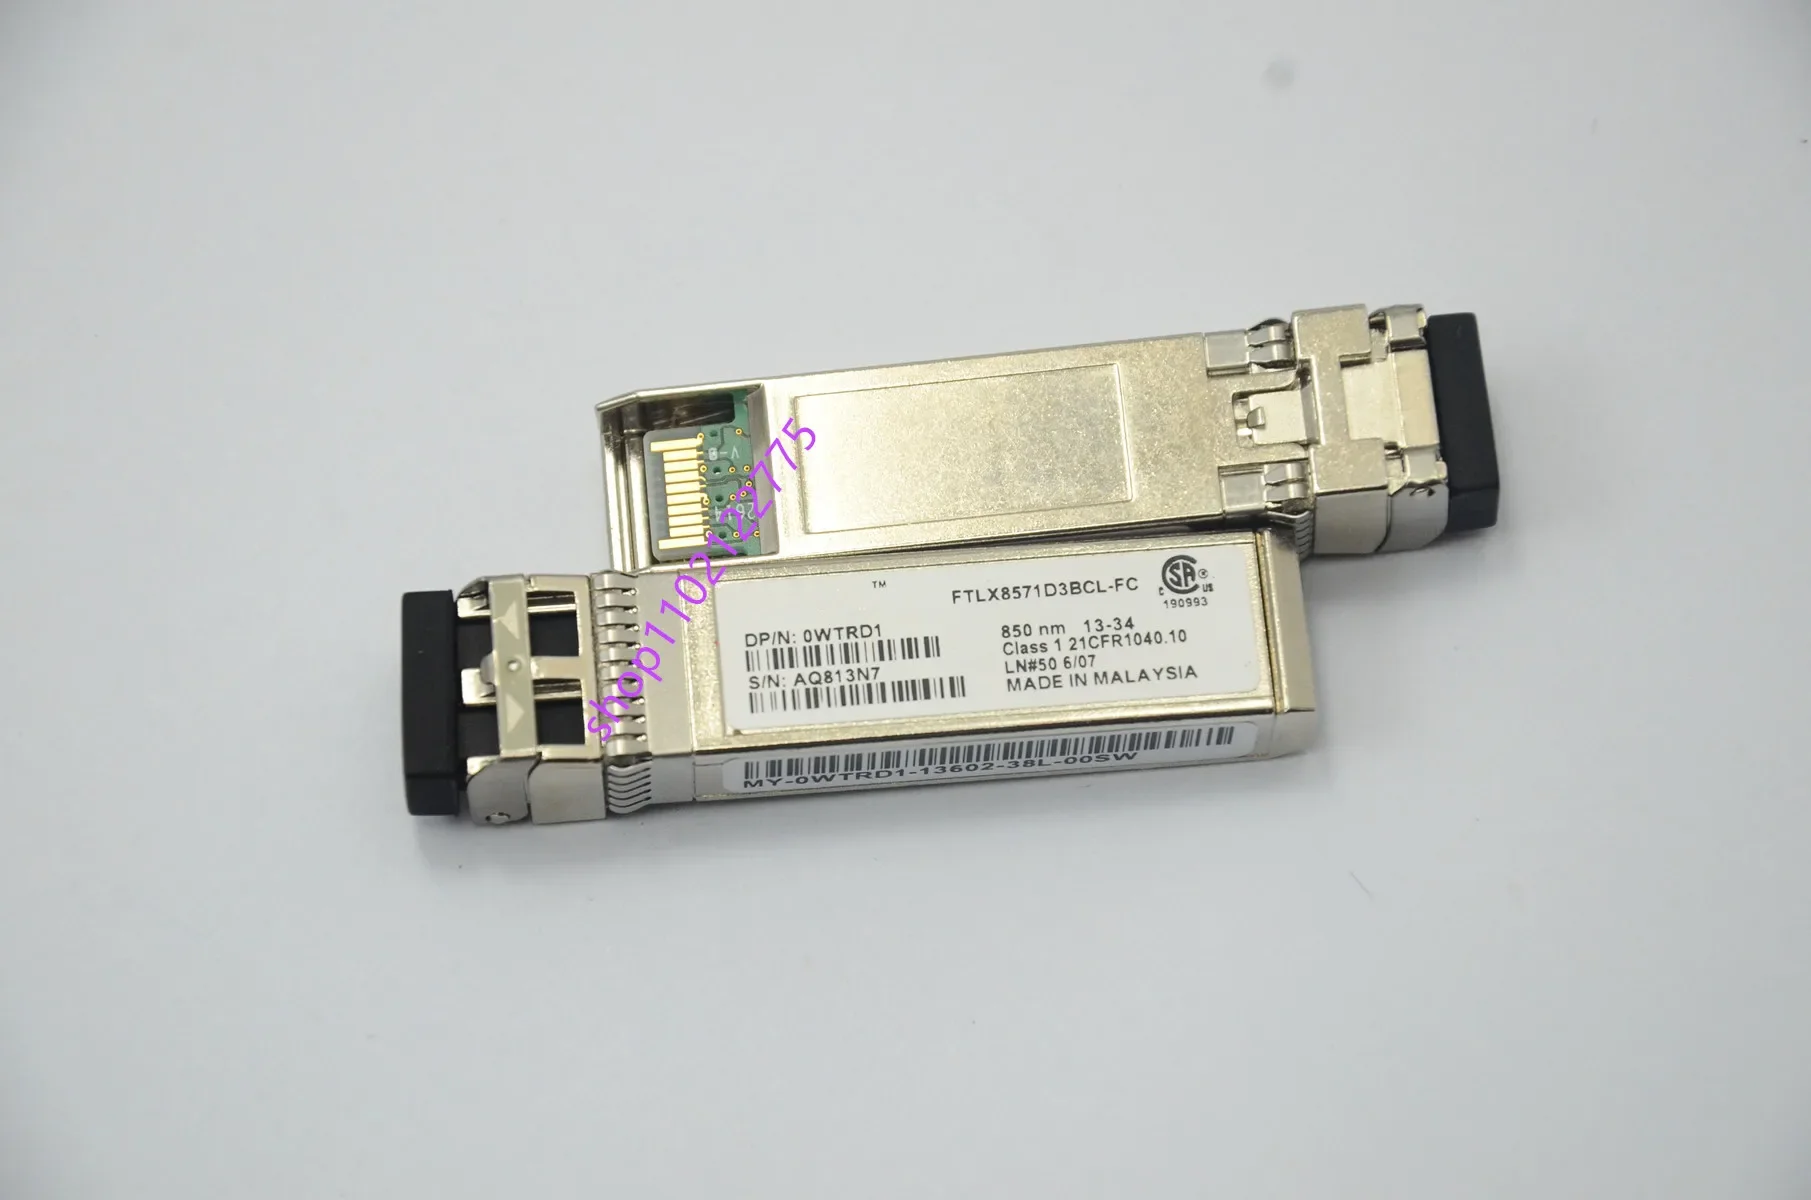 Del Module Switch 10GB/FTLX8571D3BCL-FC/850NM SFP+/0WTRD1/DE/Network Adapter Switch Module 10g Sfp